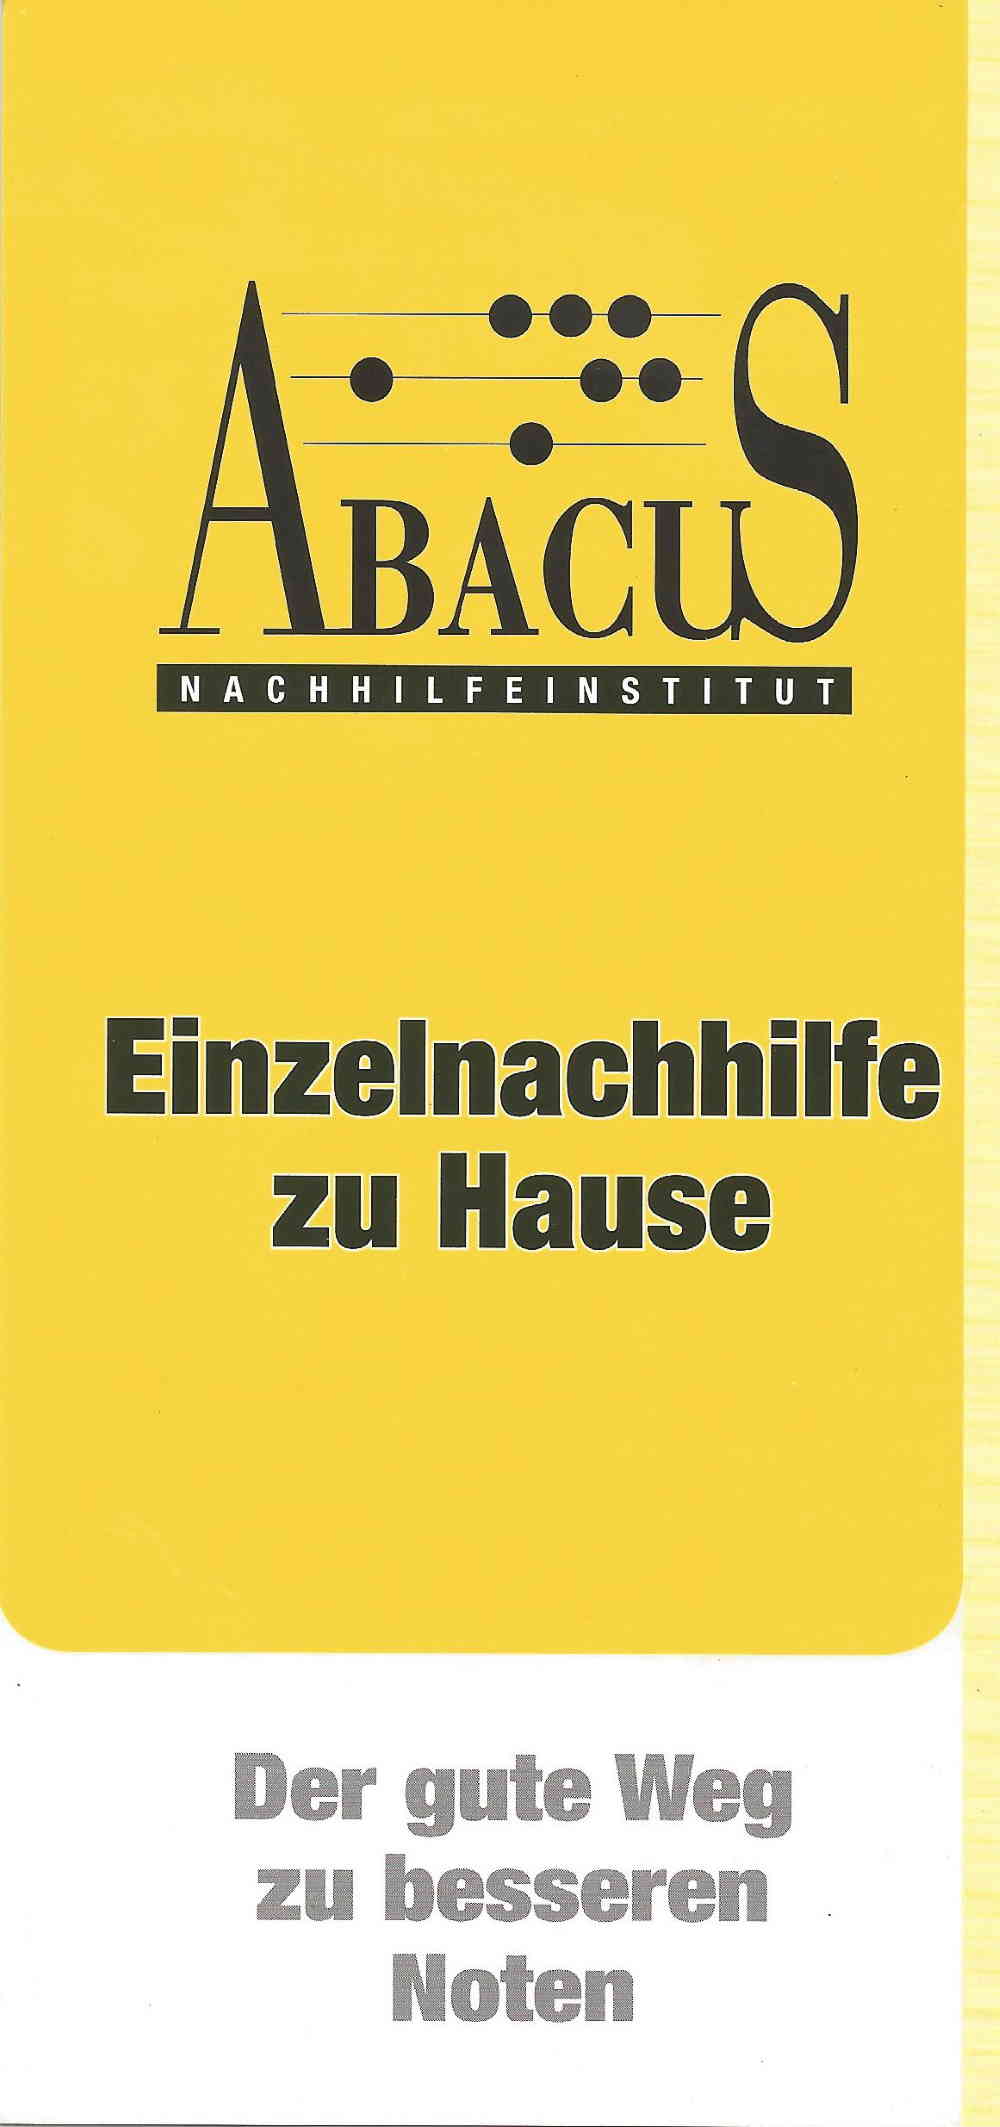 Werbeflyer der Fa. Abacus Nachhilfeinstitut